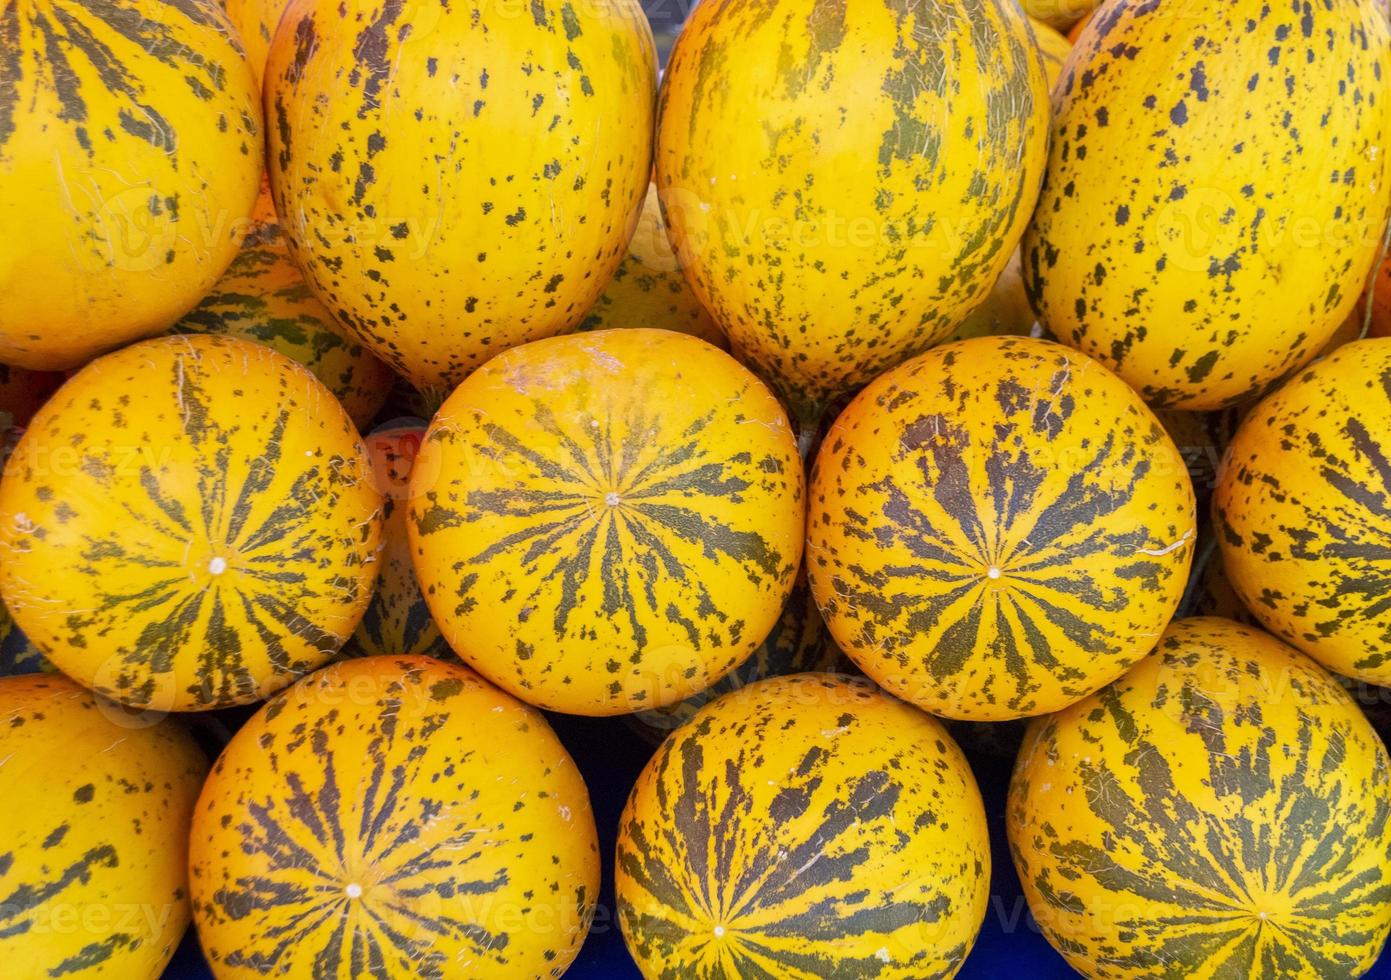 fond de délicieux melons turcs jaunes photo